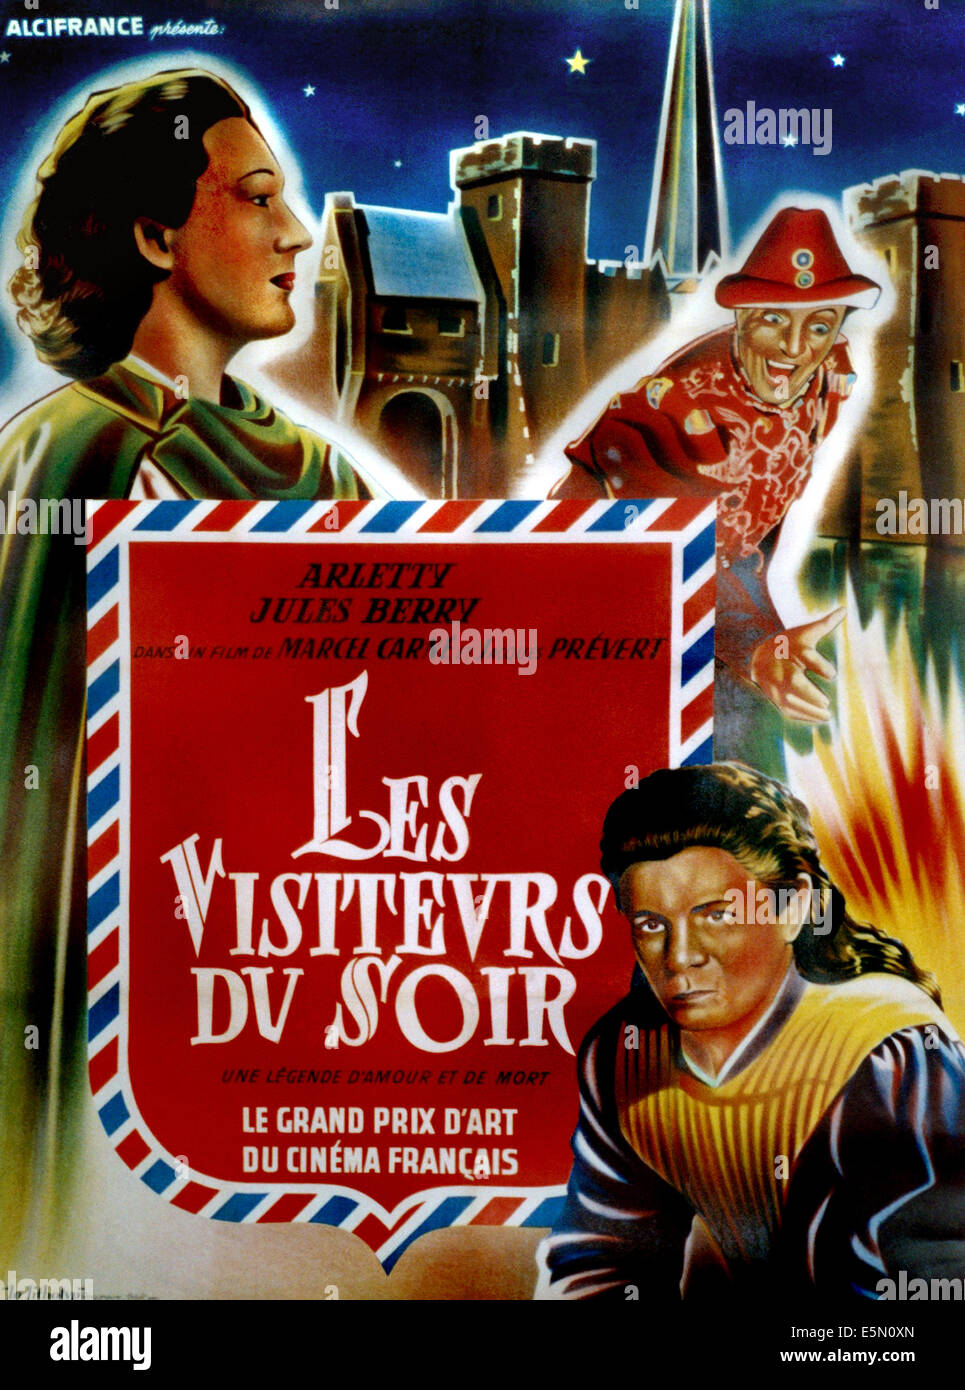 THE DEVIL'S ENVOYS, (aka LES VISITEURS DU SOIR), French poster art, Arletty (left), Jules Berry (right), 1942 Stock Photo